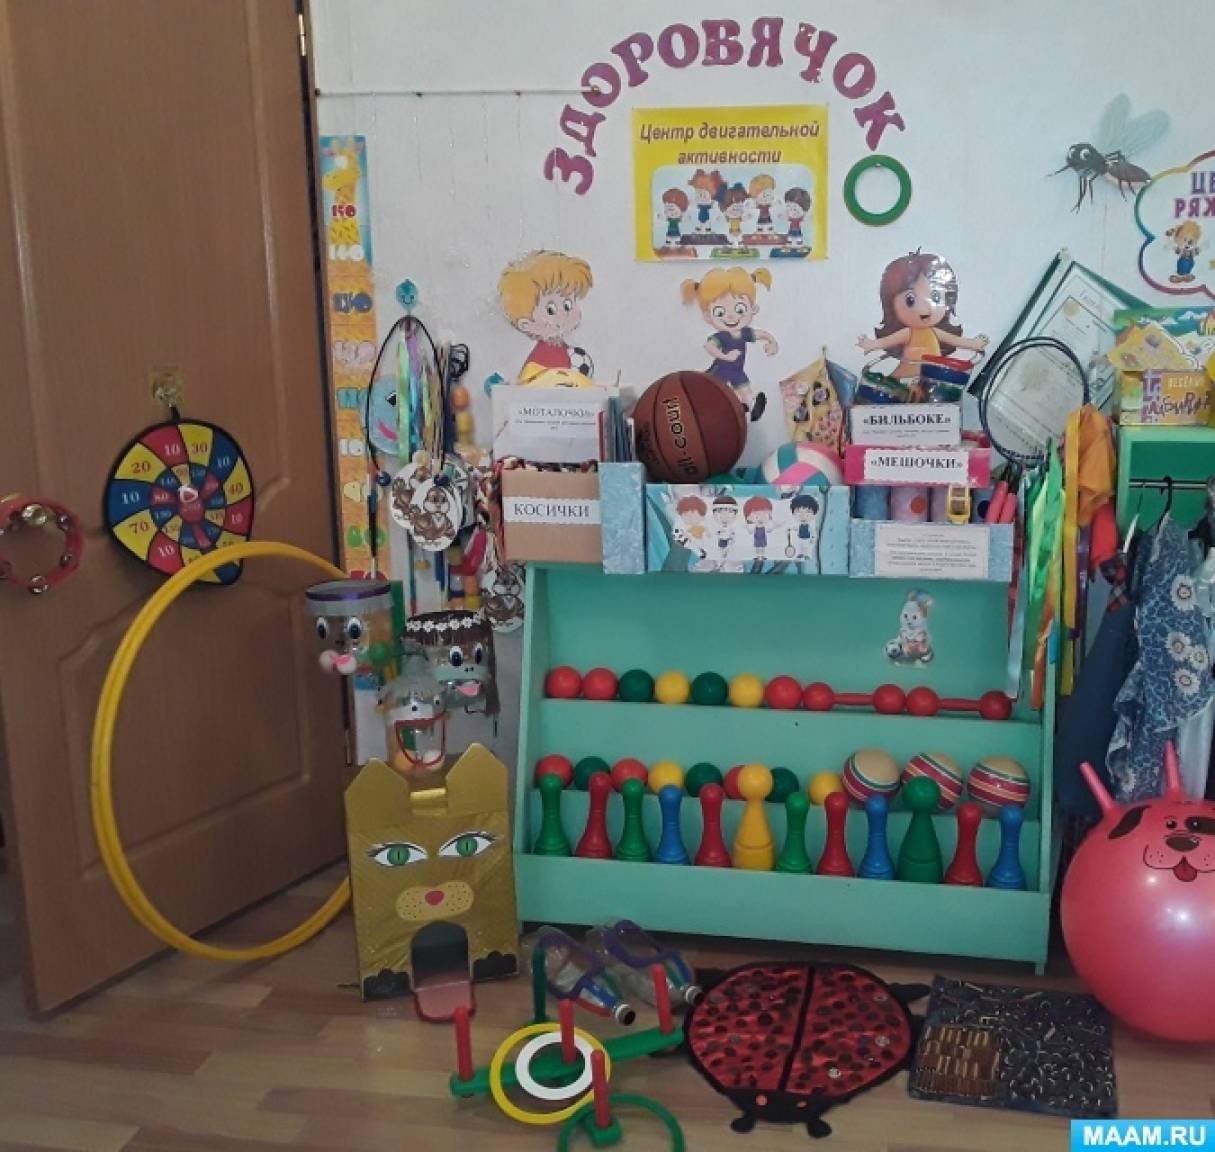 Детский сад - пространство роста - IV Всероссийская педагогическая конференция